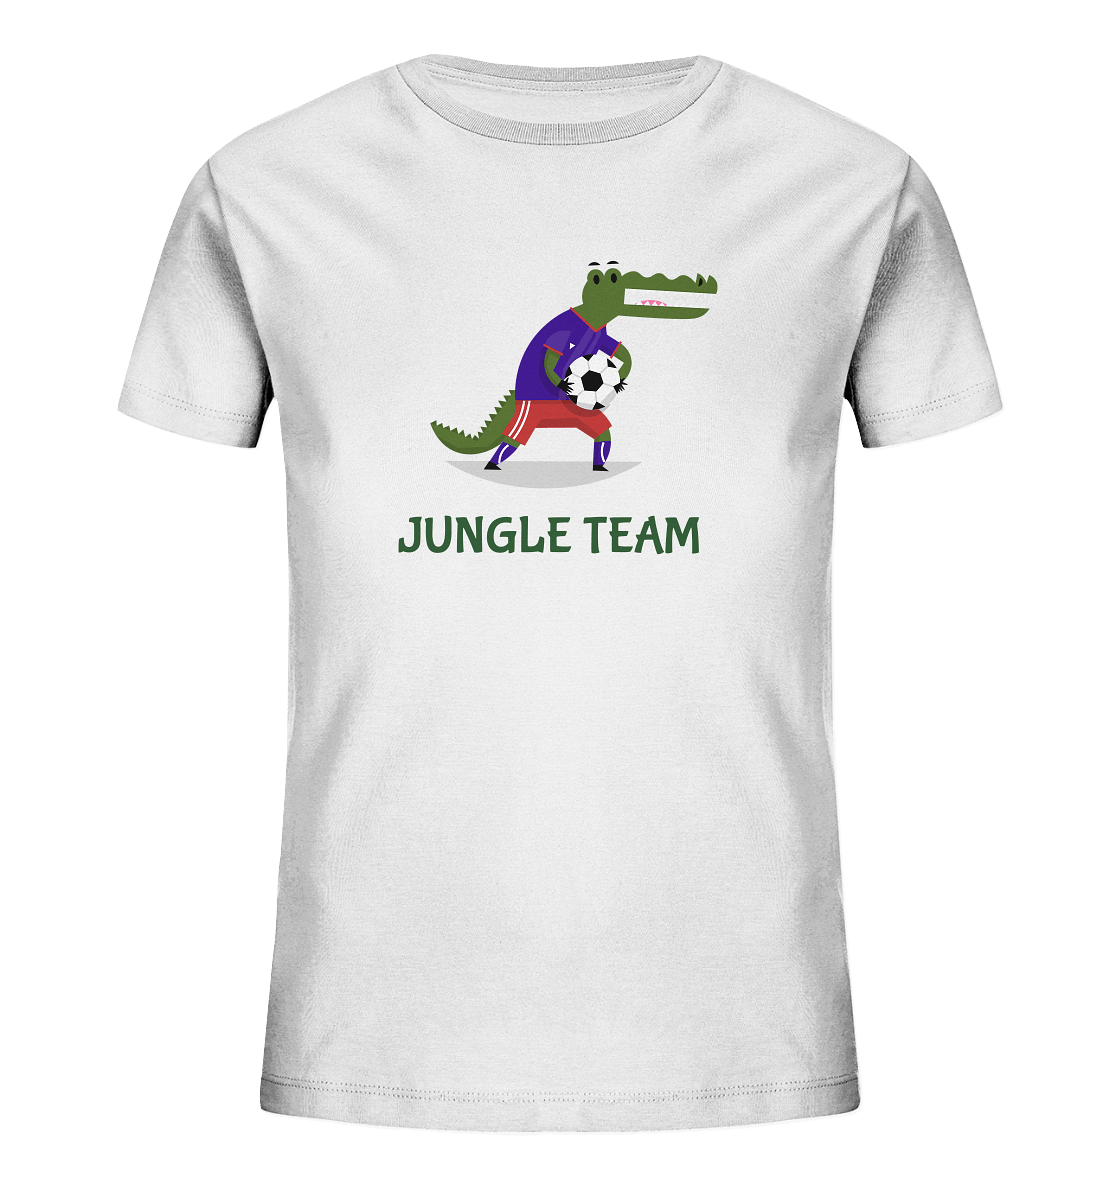 Kinder T-Shirt in Weiß mit modischen Fußballspieler Krokodile Print und Beschriftung "Jungle Team".